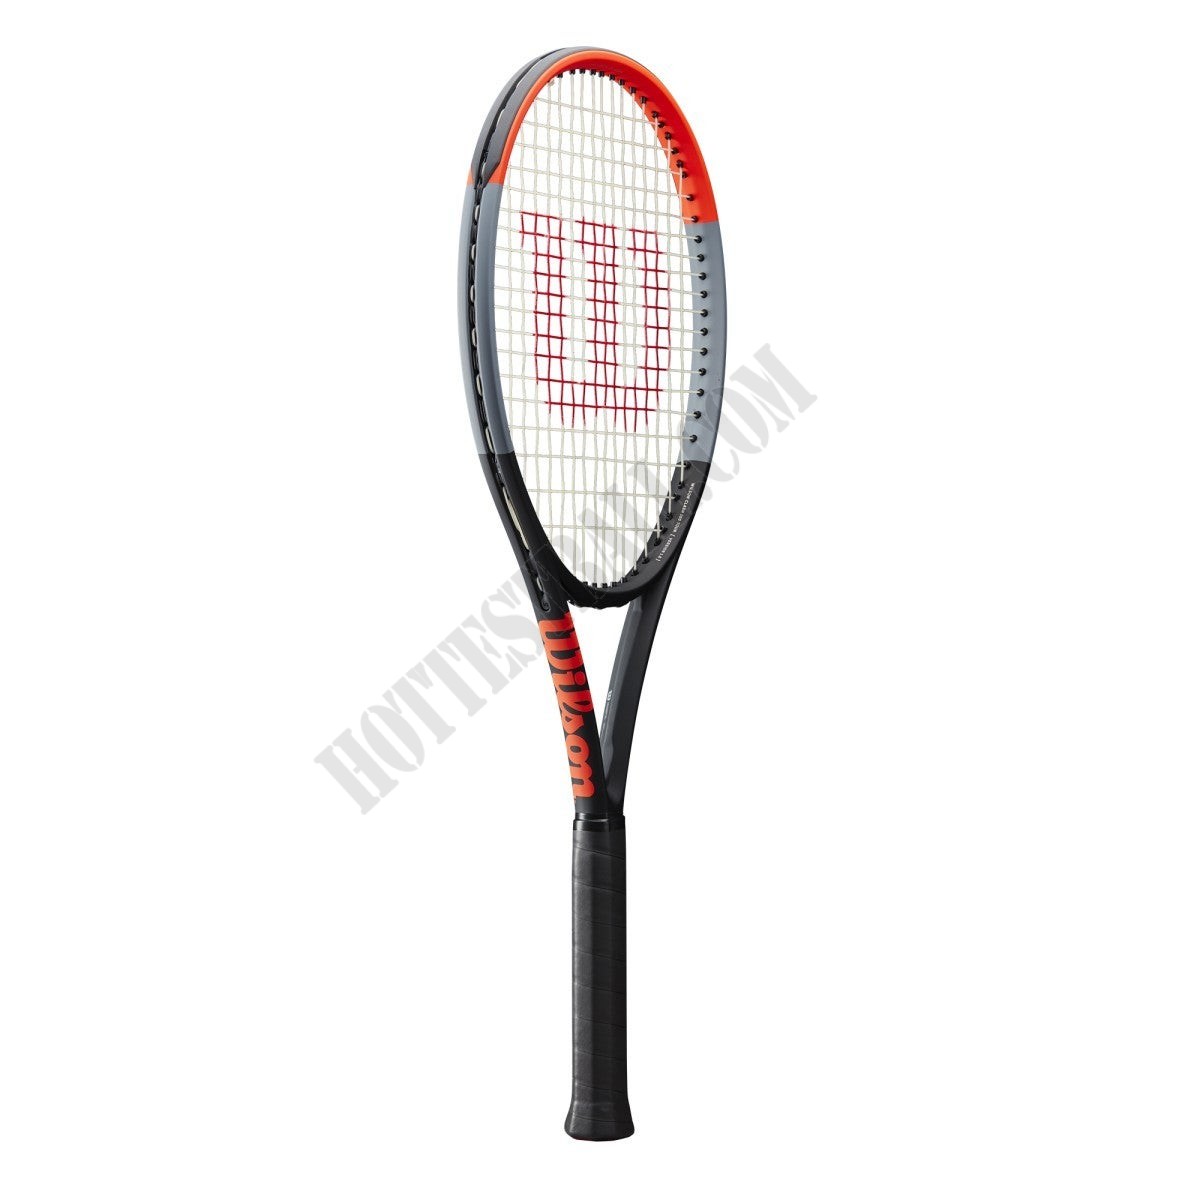 Clash 100 Tennis Racket - Wilson Discount Store - -0